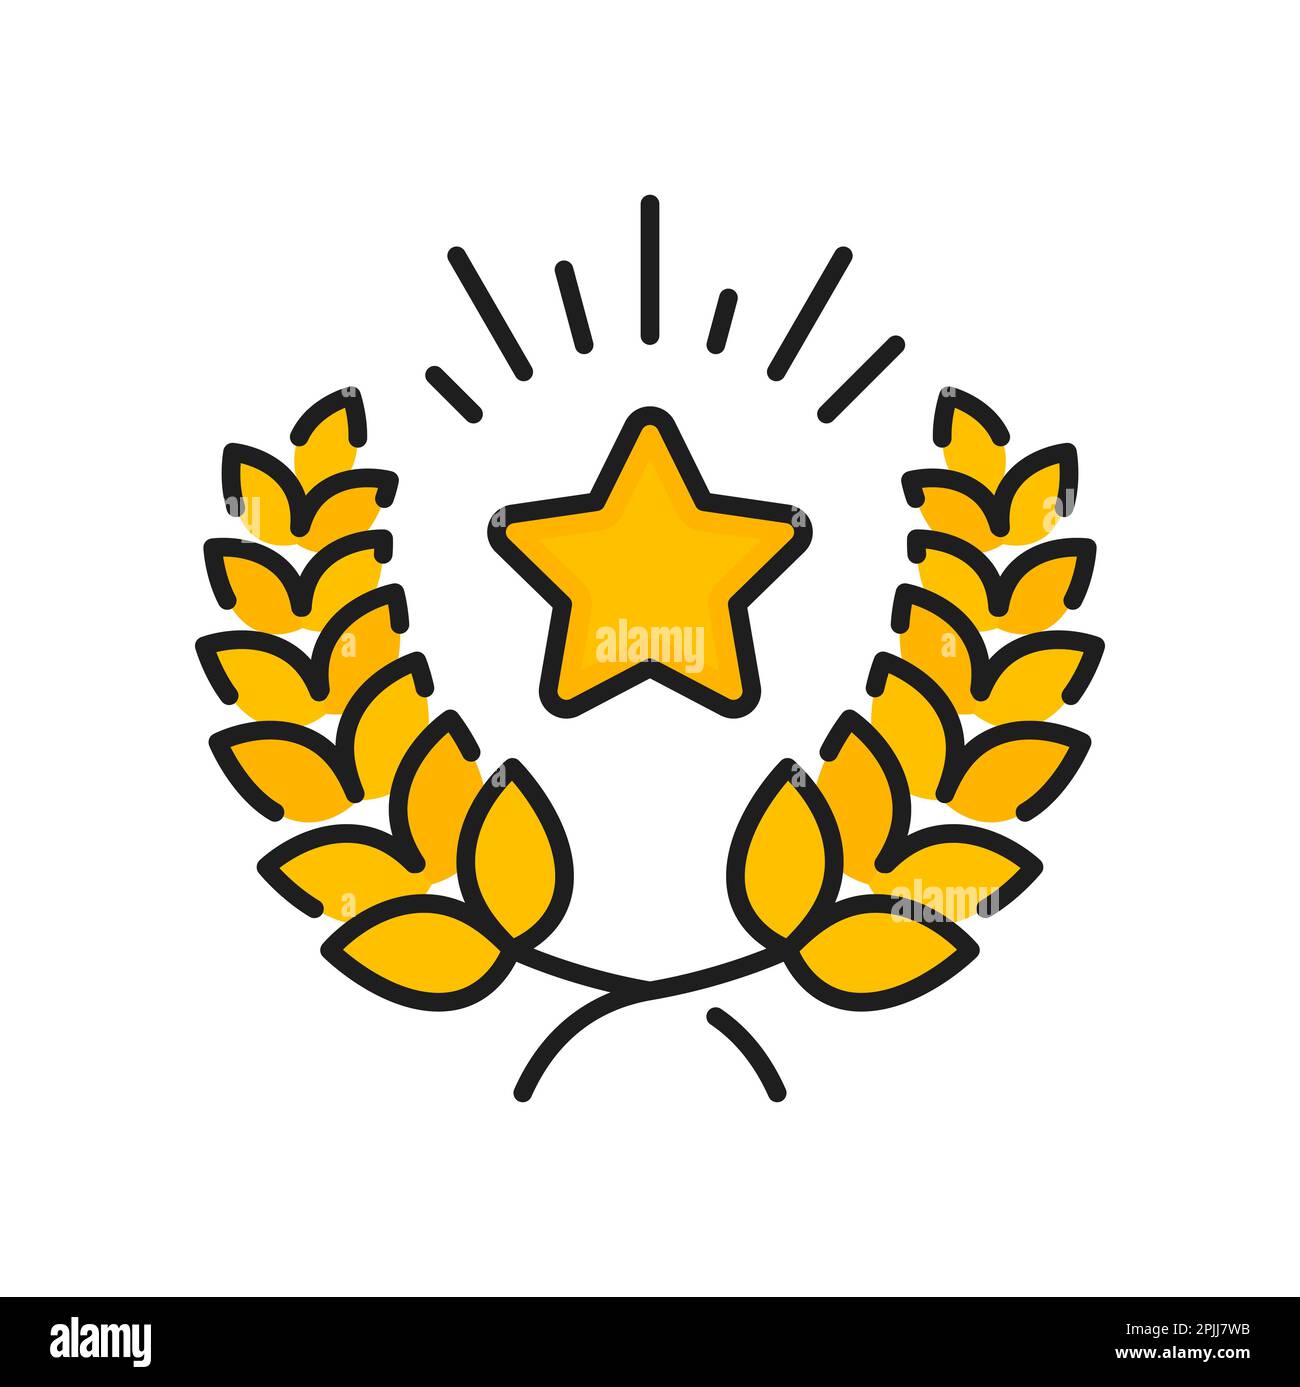 Goldener Stern und Lorbeerkranz-Vektorsymbol. Besondere Vorteile und Prämien, exklusive Bonuspunkte, Preis oder Geschenk für VIP-Mitglieder mit Kundenbindung Stock Vektor